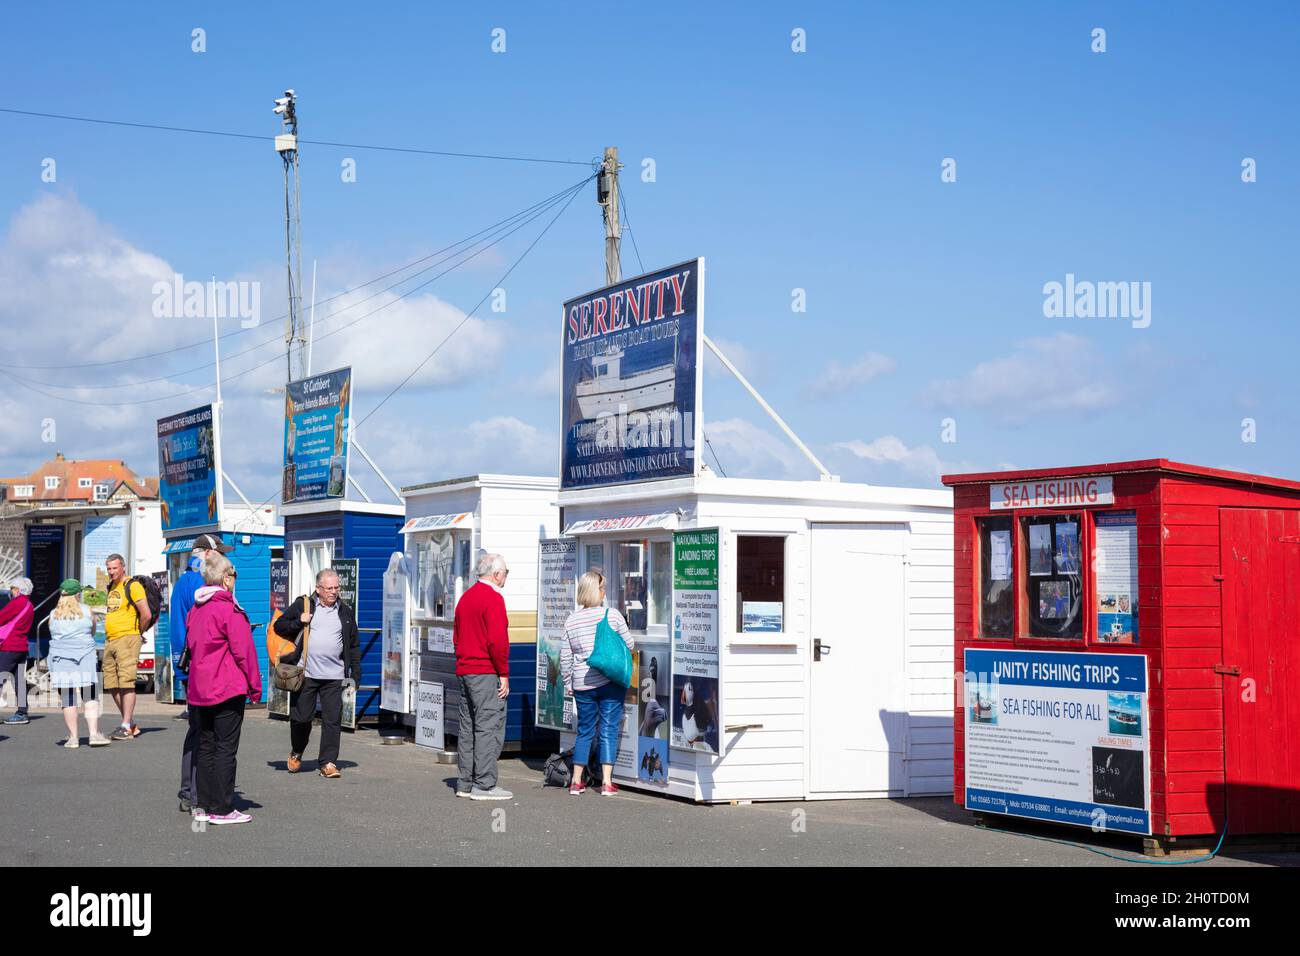 Kiosques vendant des billets pour les excursions des îles Farne excursions d'observation de la faune et des oiseaux Seahouses Harbour Northumberland Coast England Royaume-Uni Banque D'Images